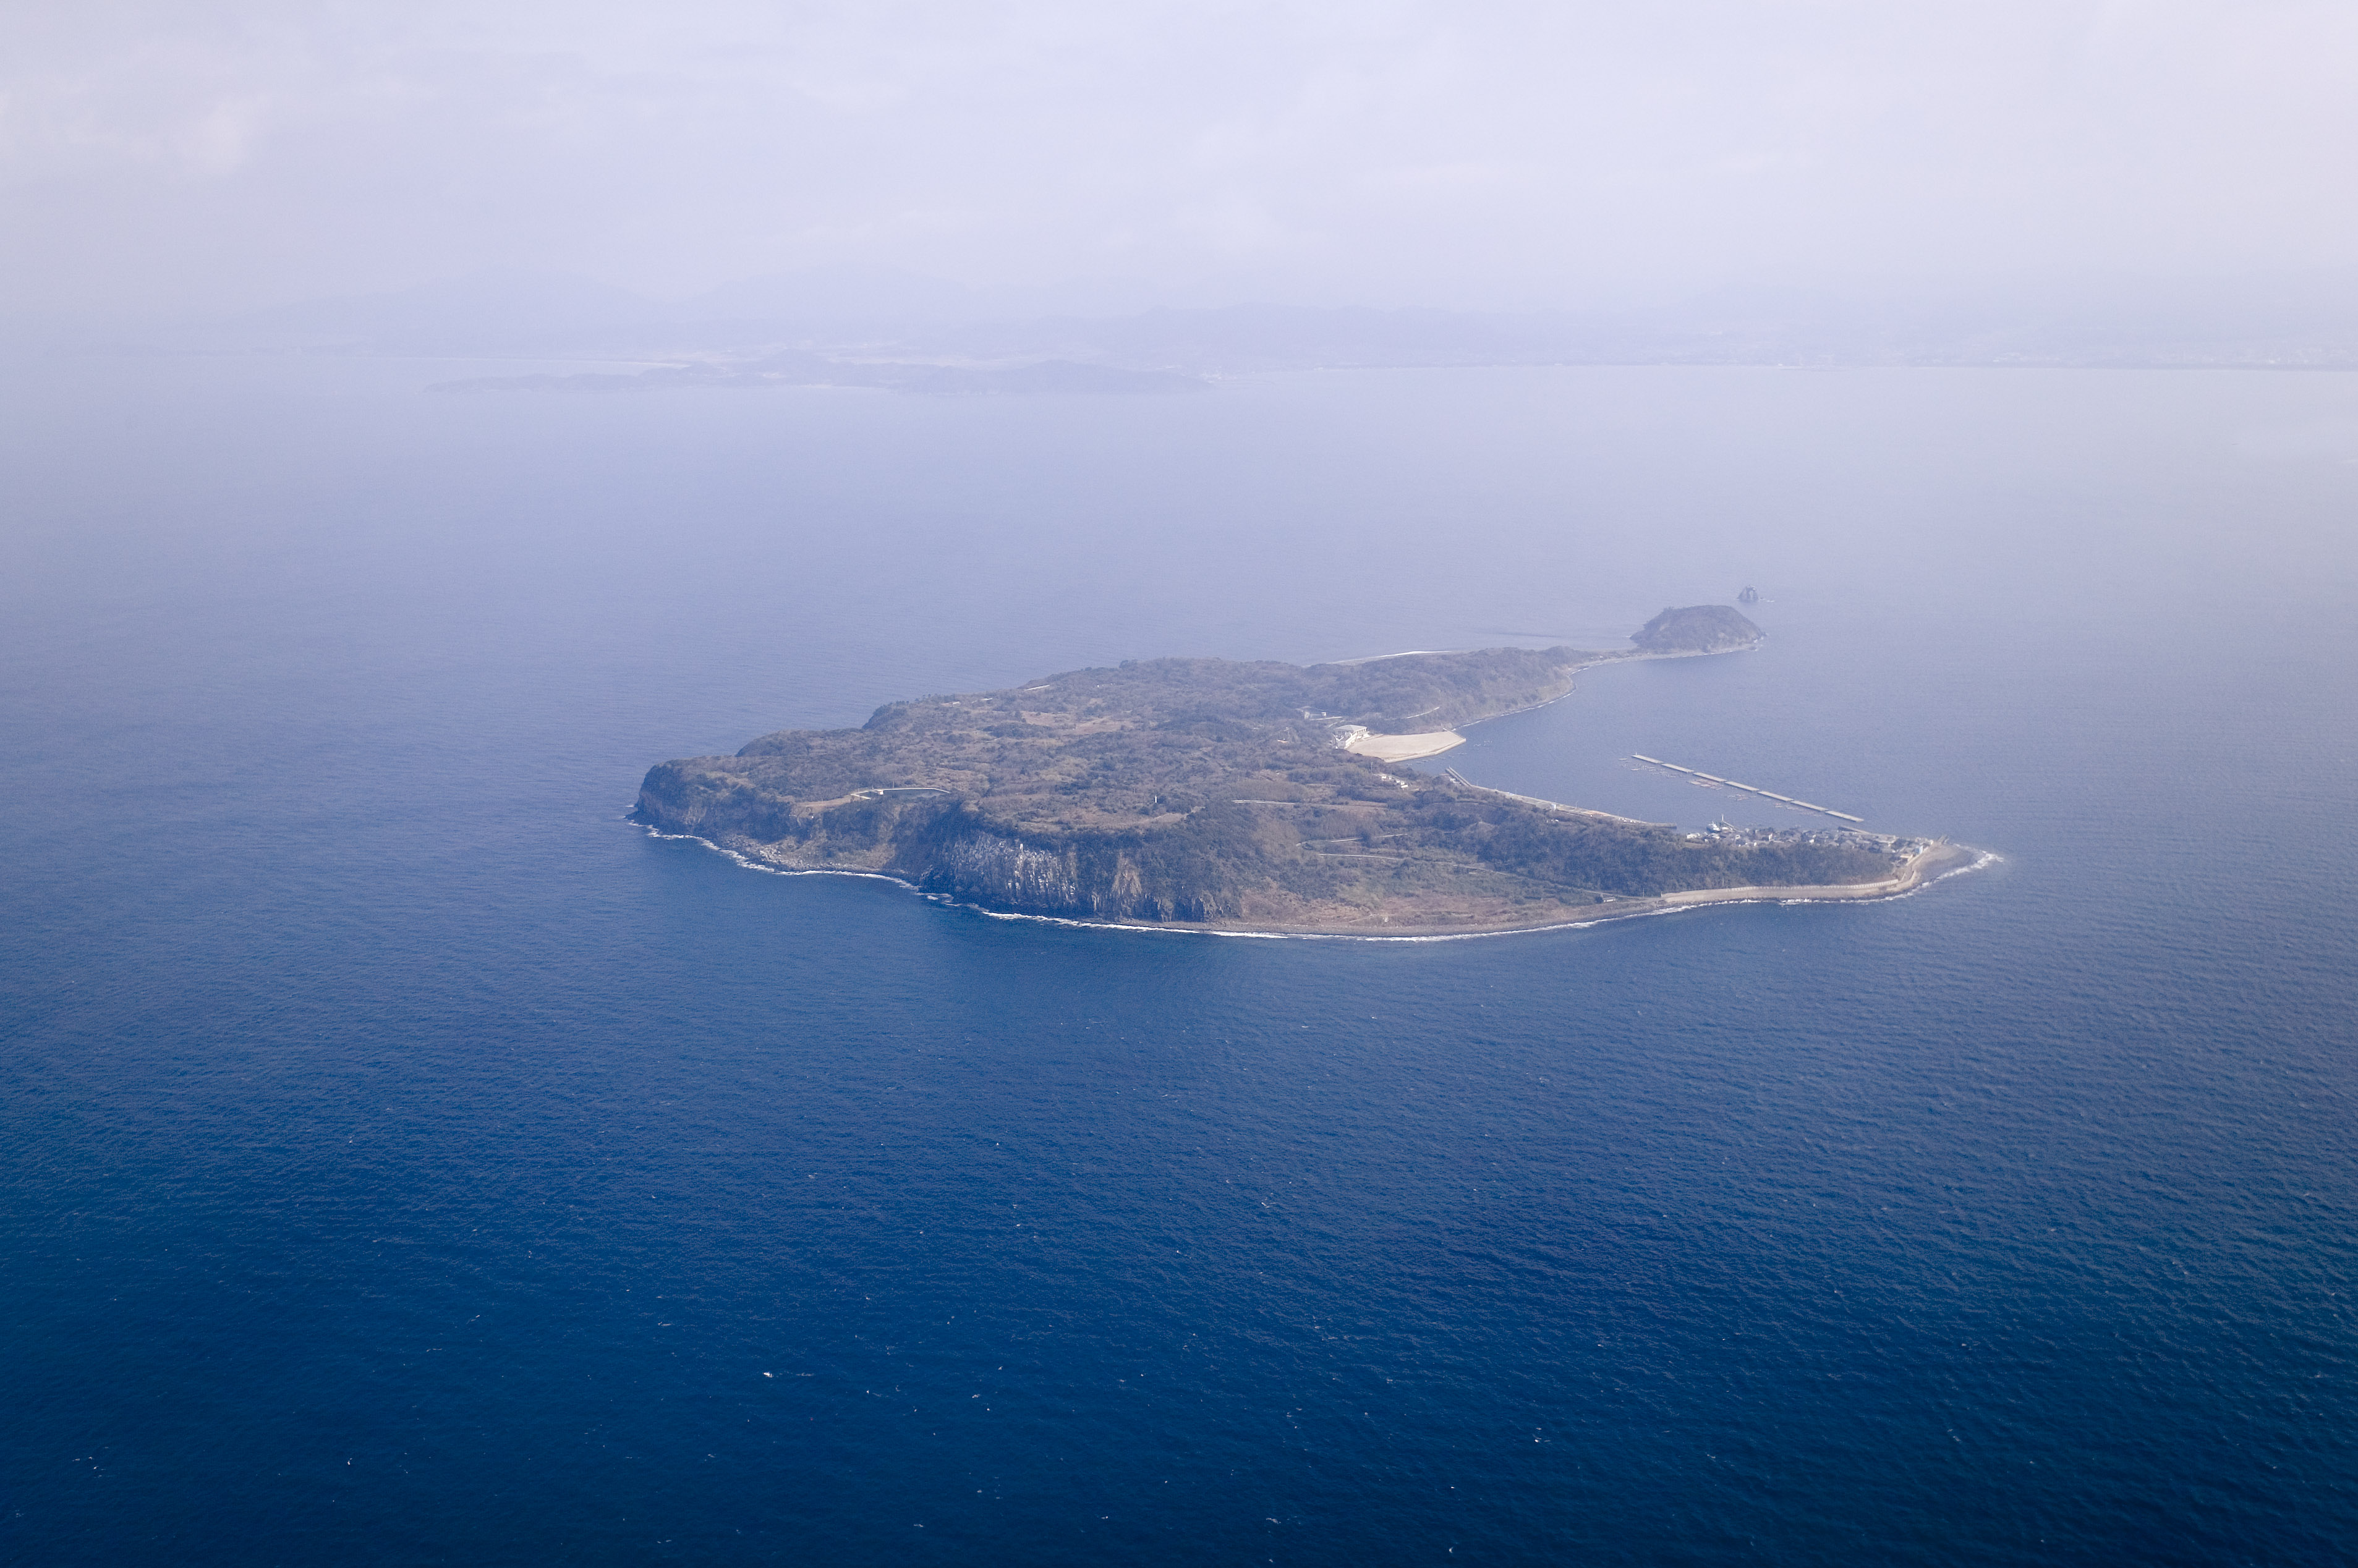 fotografia, material, livra, ajardine, imagine, proveja fotografia,Ainoshima, ilha solitria, precipcio, , O mar